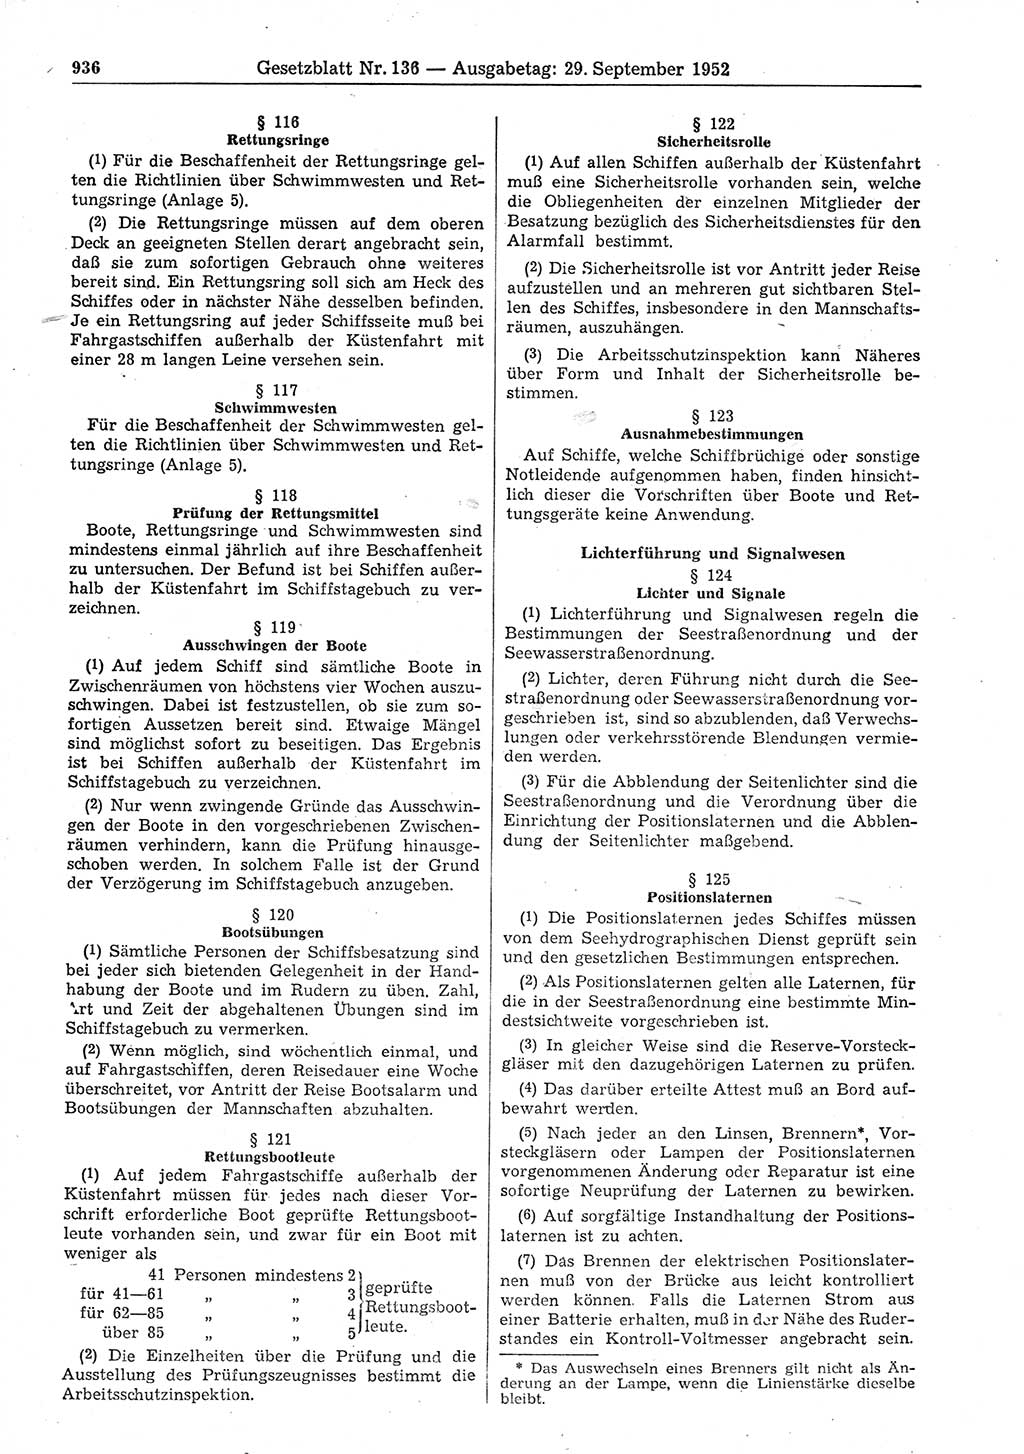 Gesetzblatt (GBl.) der Deutschen Demokratischen Republik (DDR) 1952, Seite 936 (GBl. DDR 1952, S. 936)